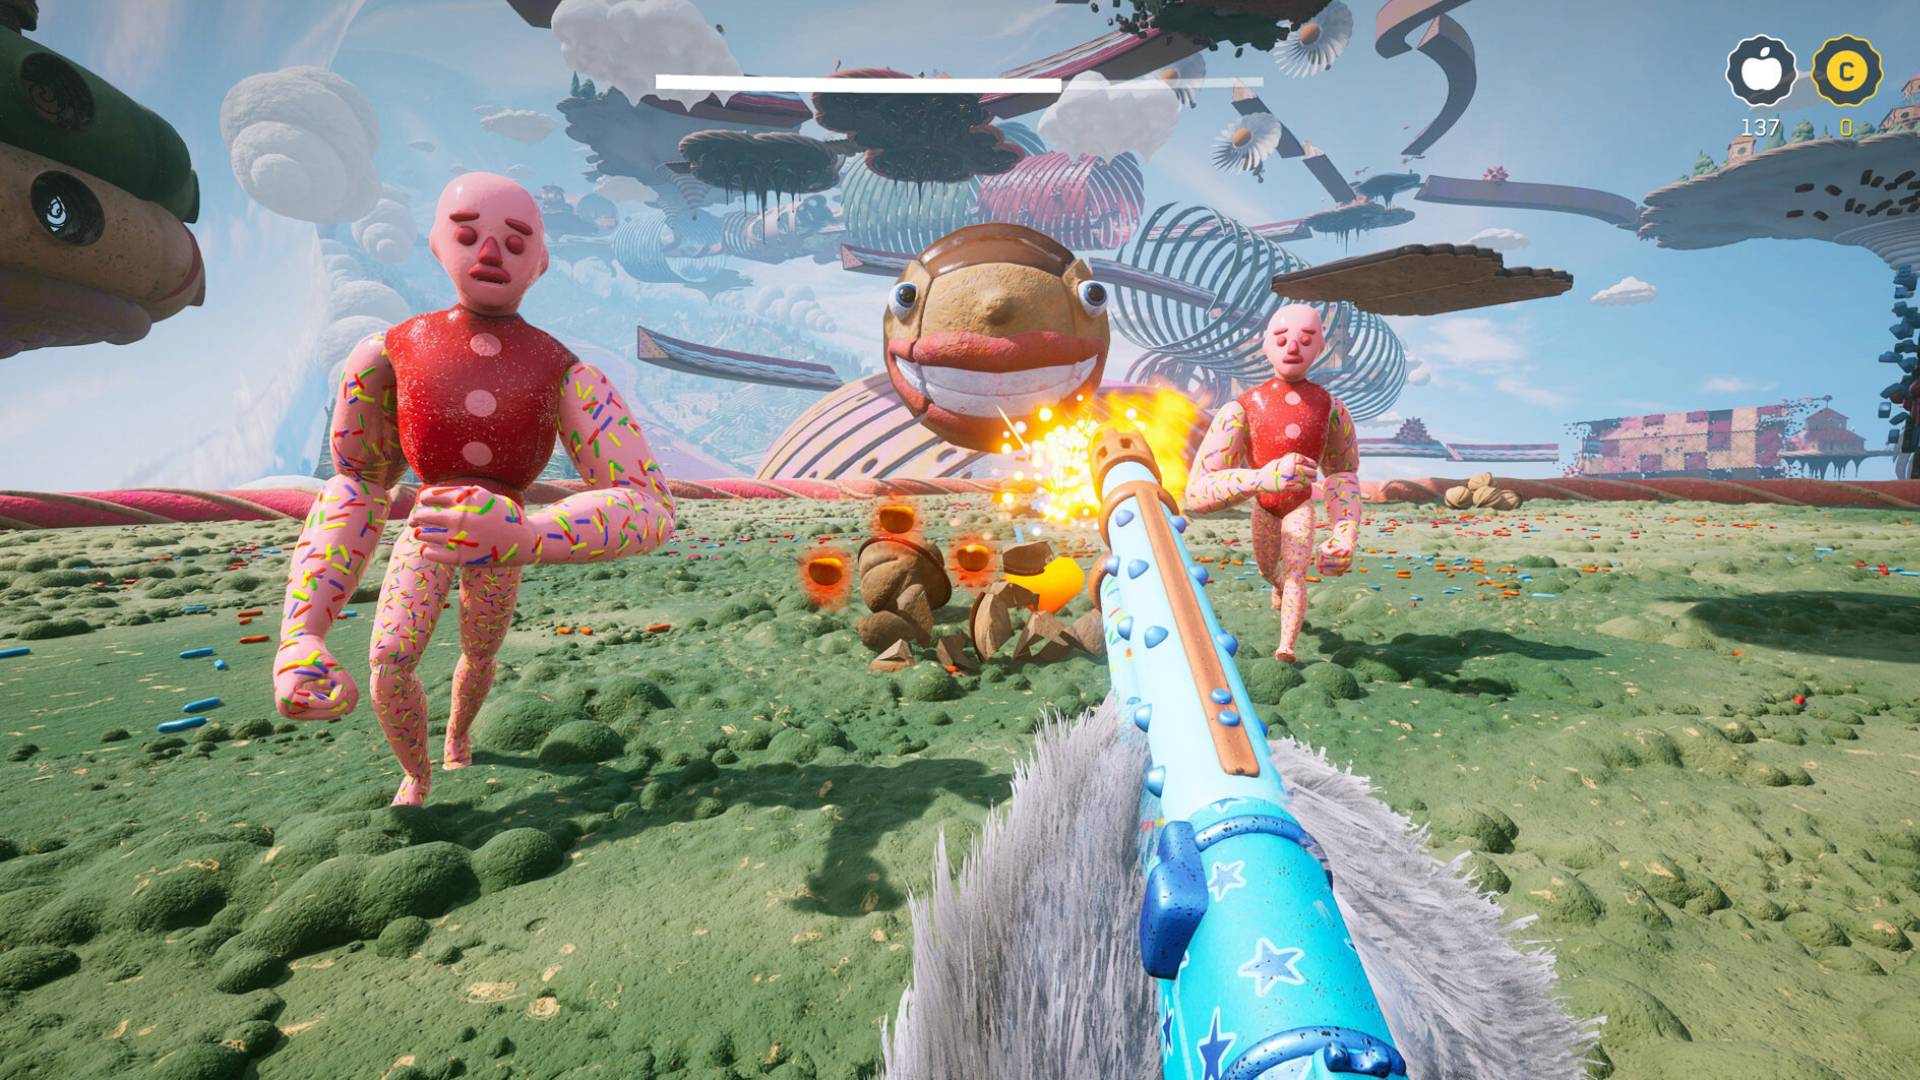 El nuevo DLC de Atomic Heart es un pastel "GPT" mundo, donde eres peludo: una criatura peluda con una pistola azul brillante dispara a enemigos coloridos en un campo